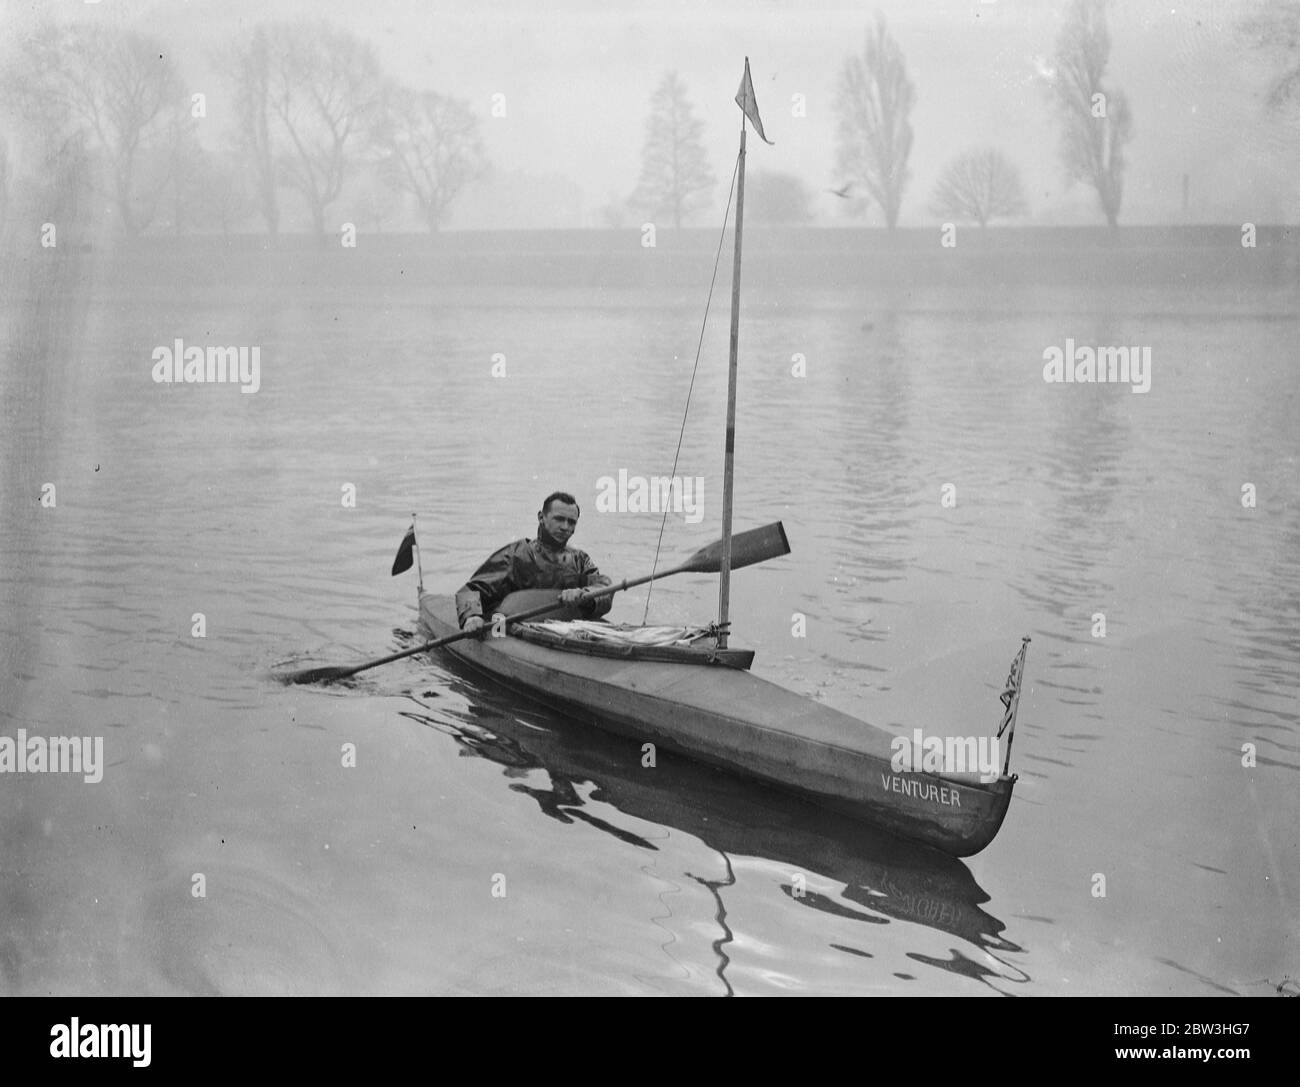 Homme de Londres pour tenter de faire du canoë-kayak à travers l'Atlantique , pour Â £ 5,000 prix . Photos : M. Leslie William Fairnie , qui propose de faire une traversée en canoë de l'Atlantique , en essayant son canoë sur la Tamise . 10 février 1935 Banque D'Images